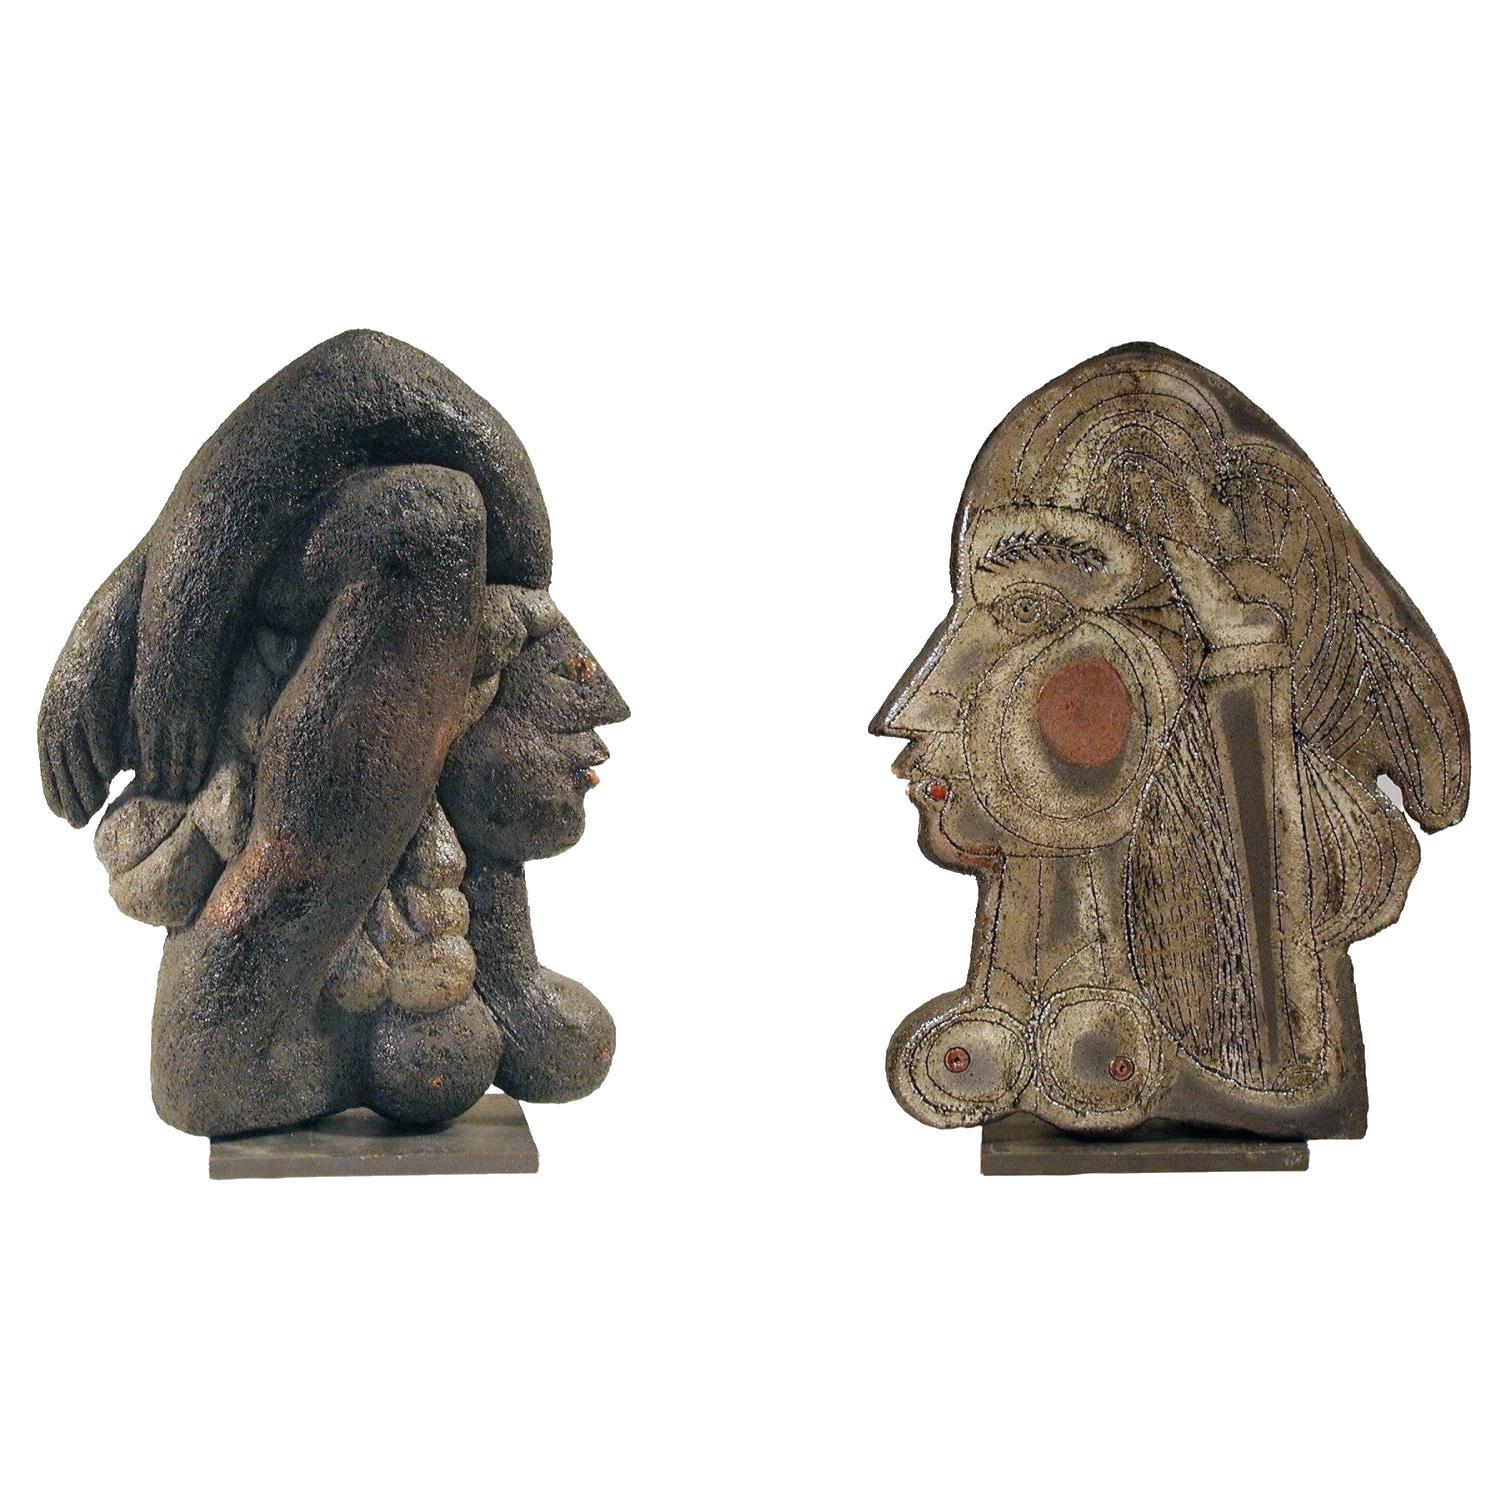 Roger Capron - Ceramic Sculpture Cleopatra 